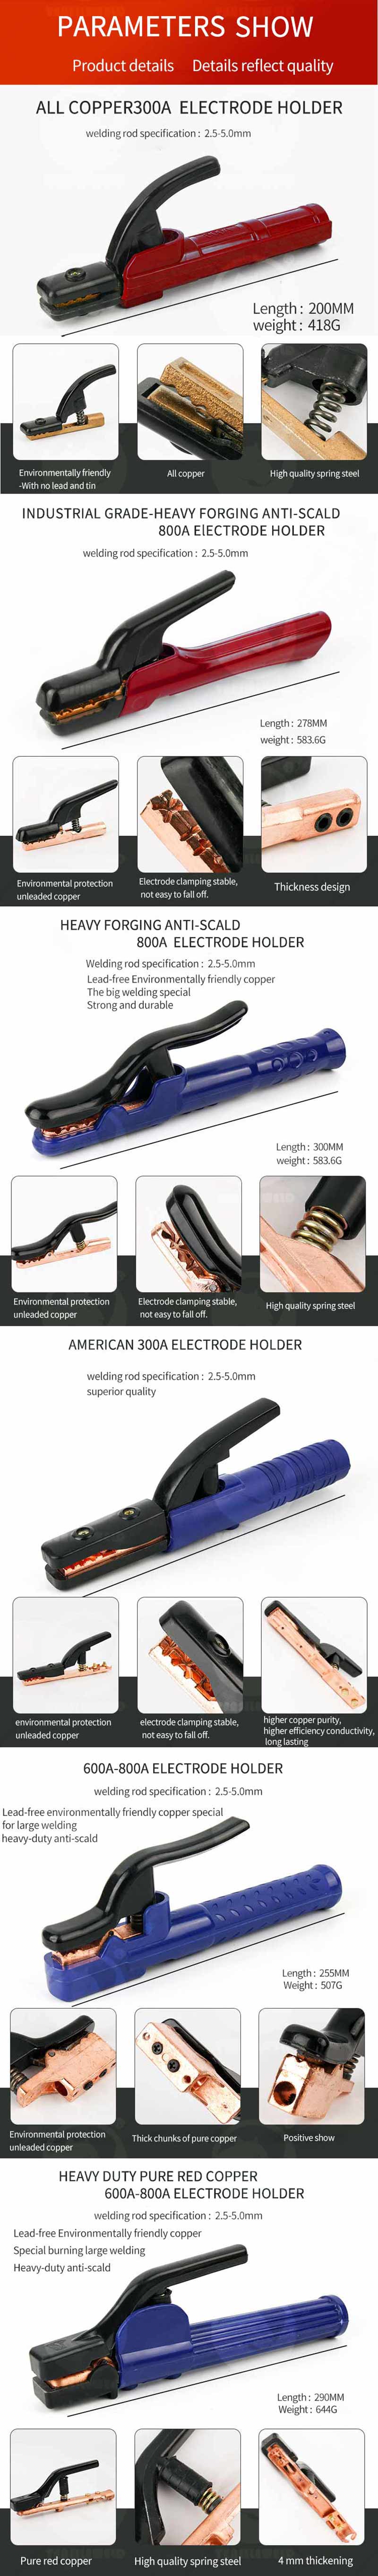 Electrode Holder